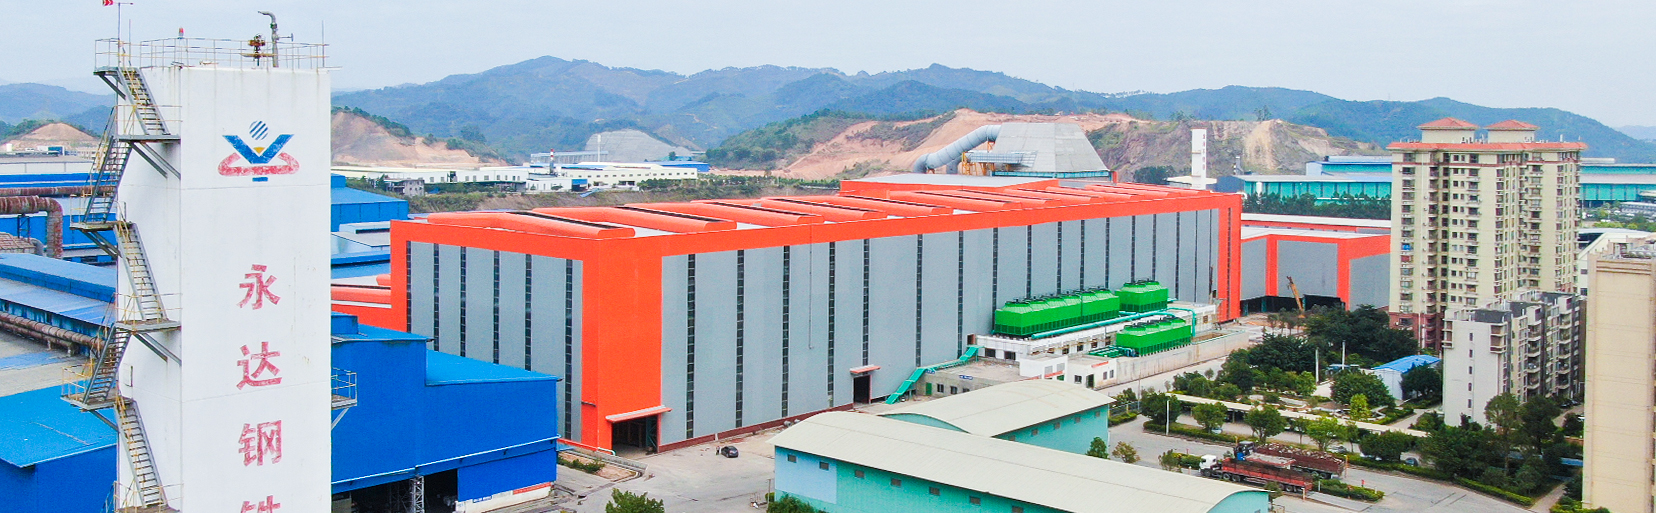 梧州市永達鋼鐵有限公司--官方網站